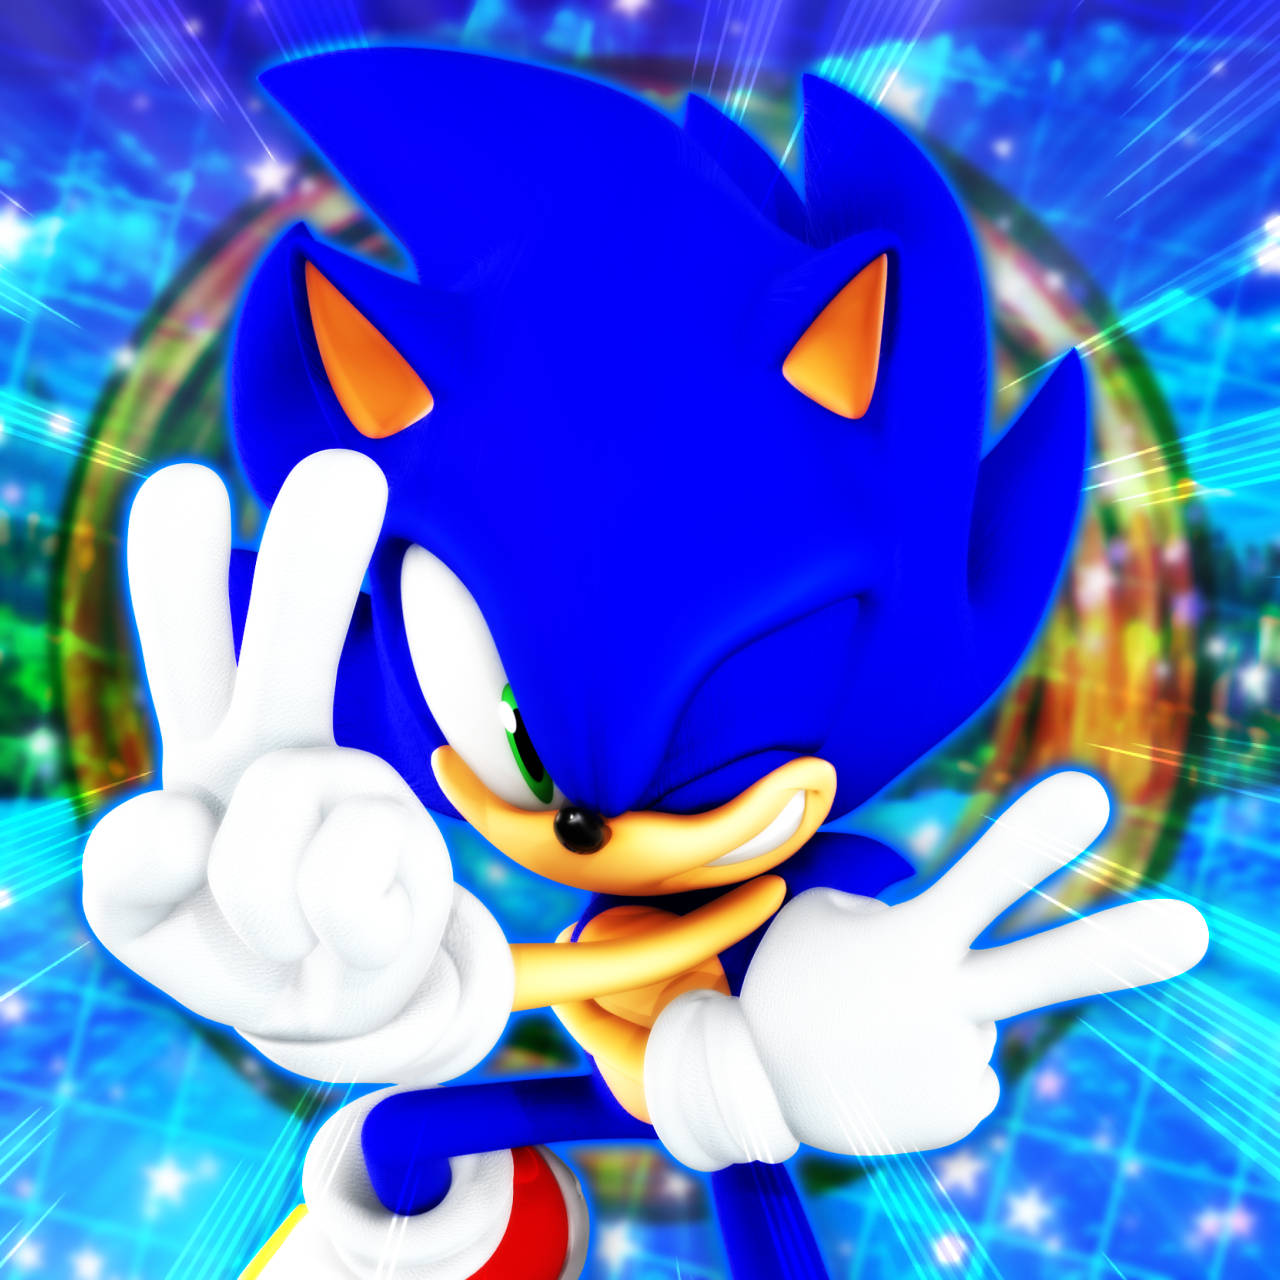 Nyd spændingen af Sonic i Cool Sonic Wallpaper Wallpaper